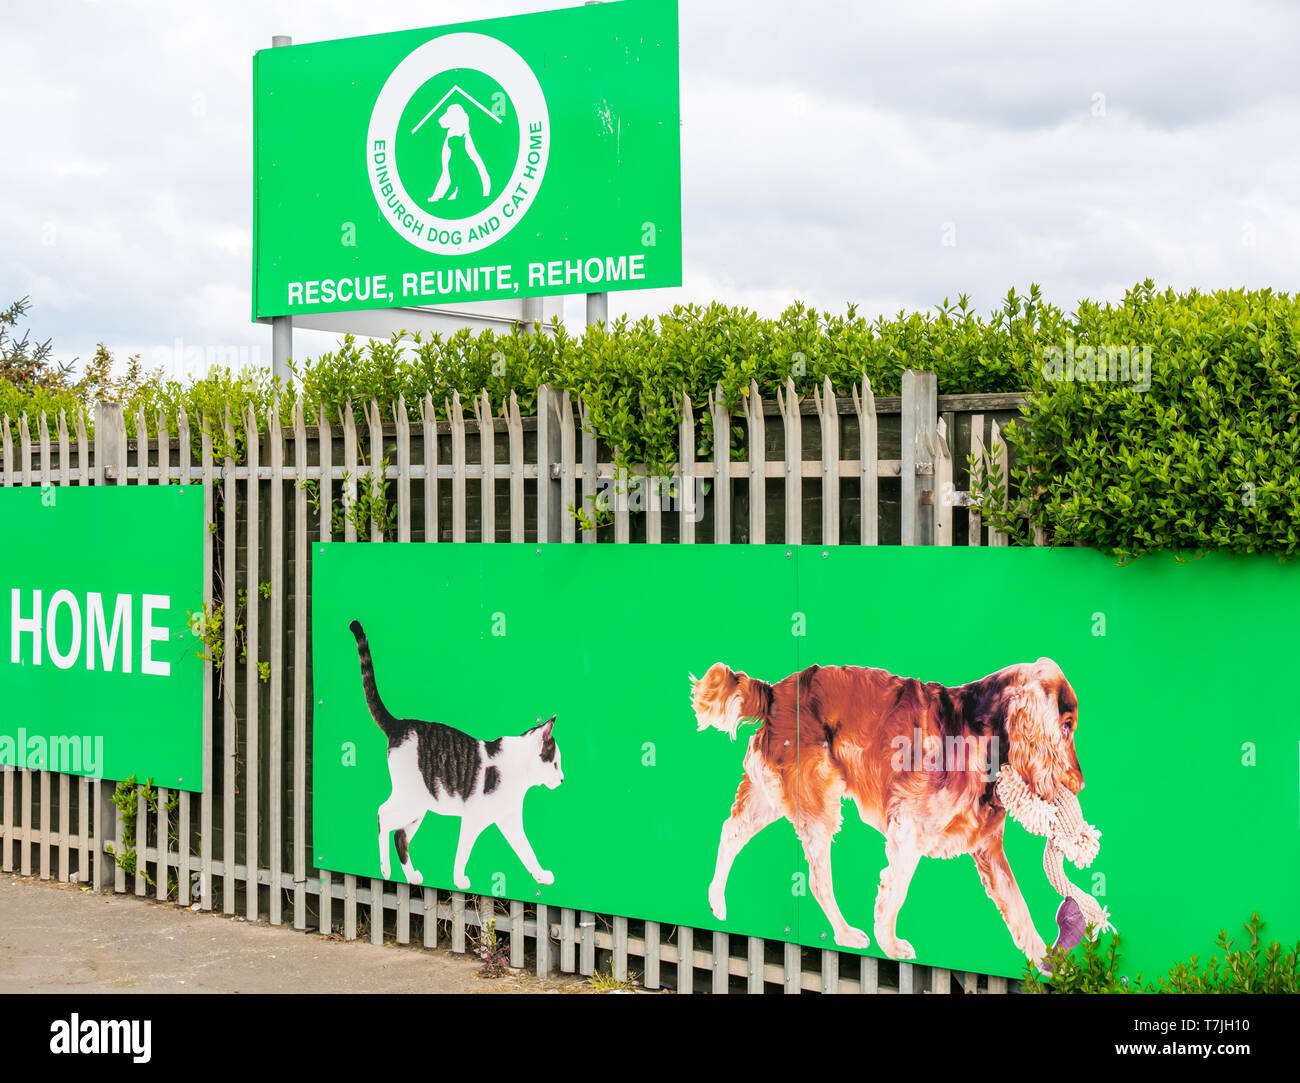 Edinburgh cane e gatto Home ingresso, animale domestico centro di salvataggio, Seafield, Edimburgo, Scozia, Regno Unito Foto Stock